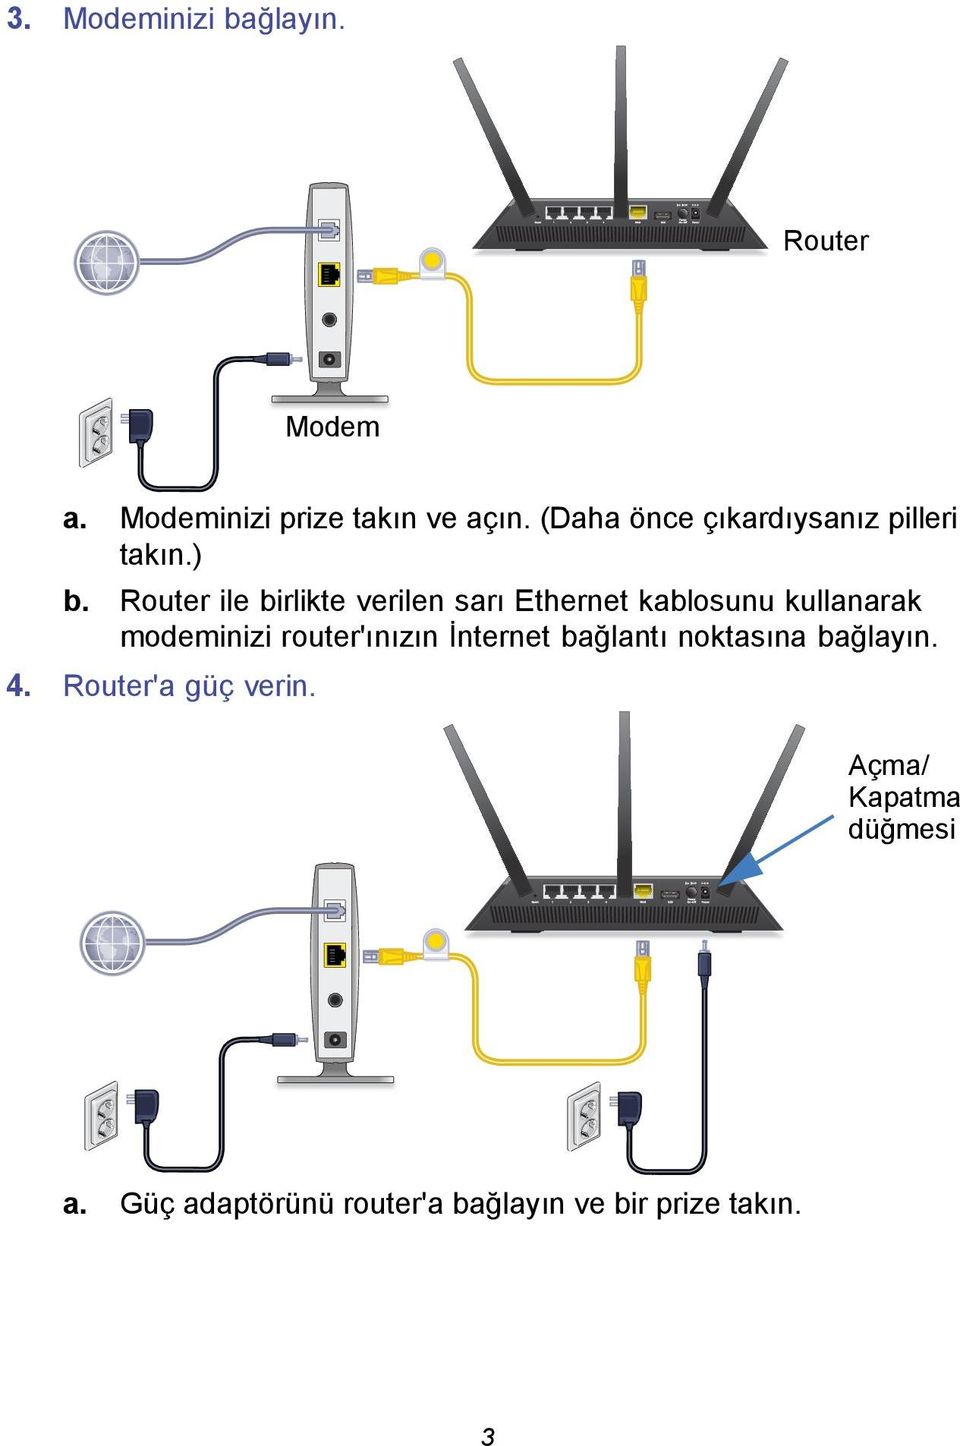 Router ile birlikte verilen sarı Ethernet kablosunu kullanarak modeminizi